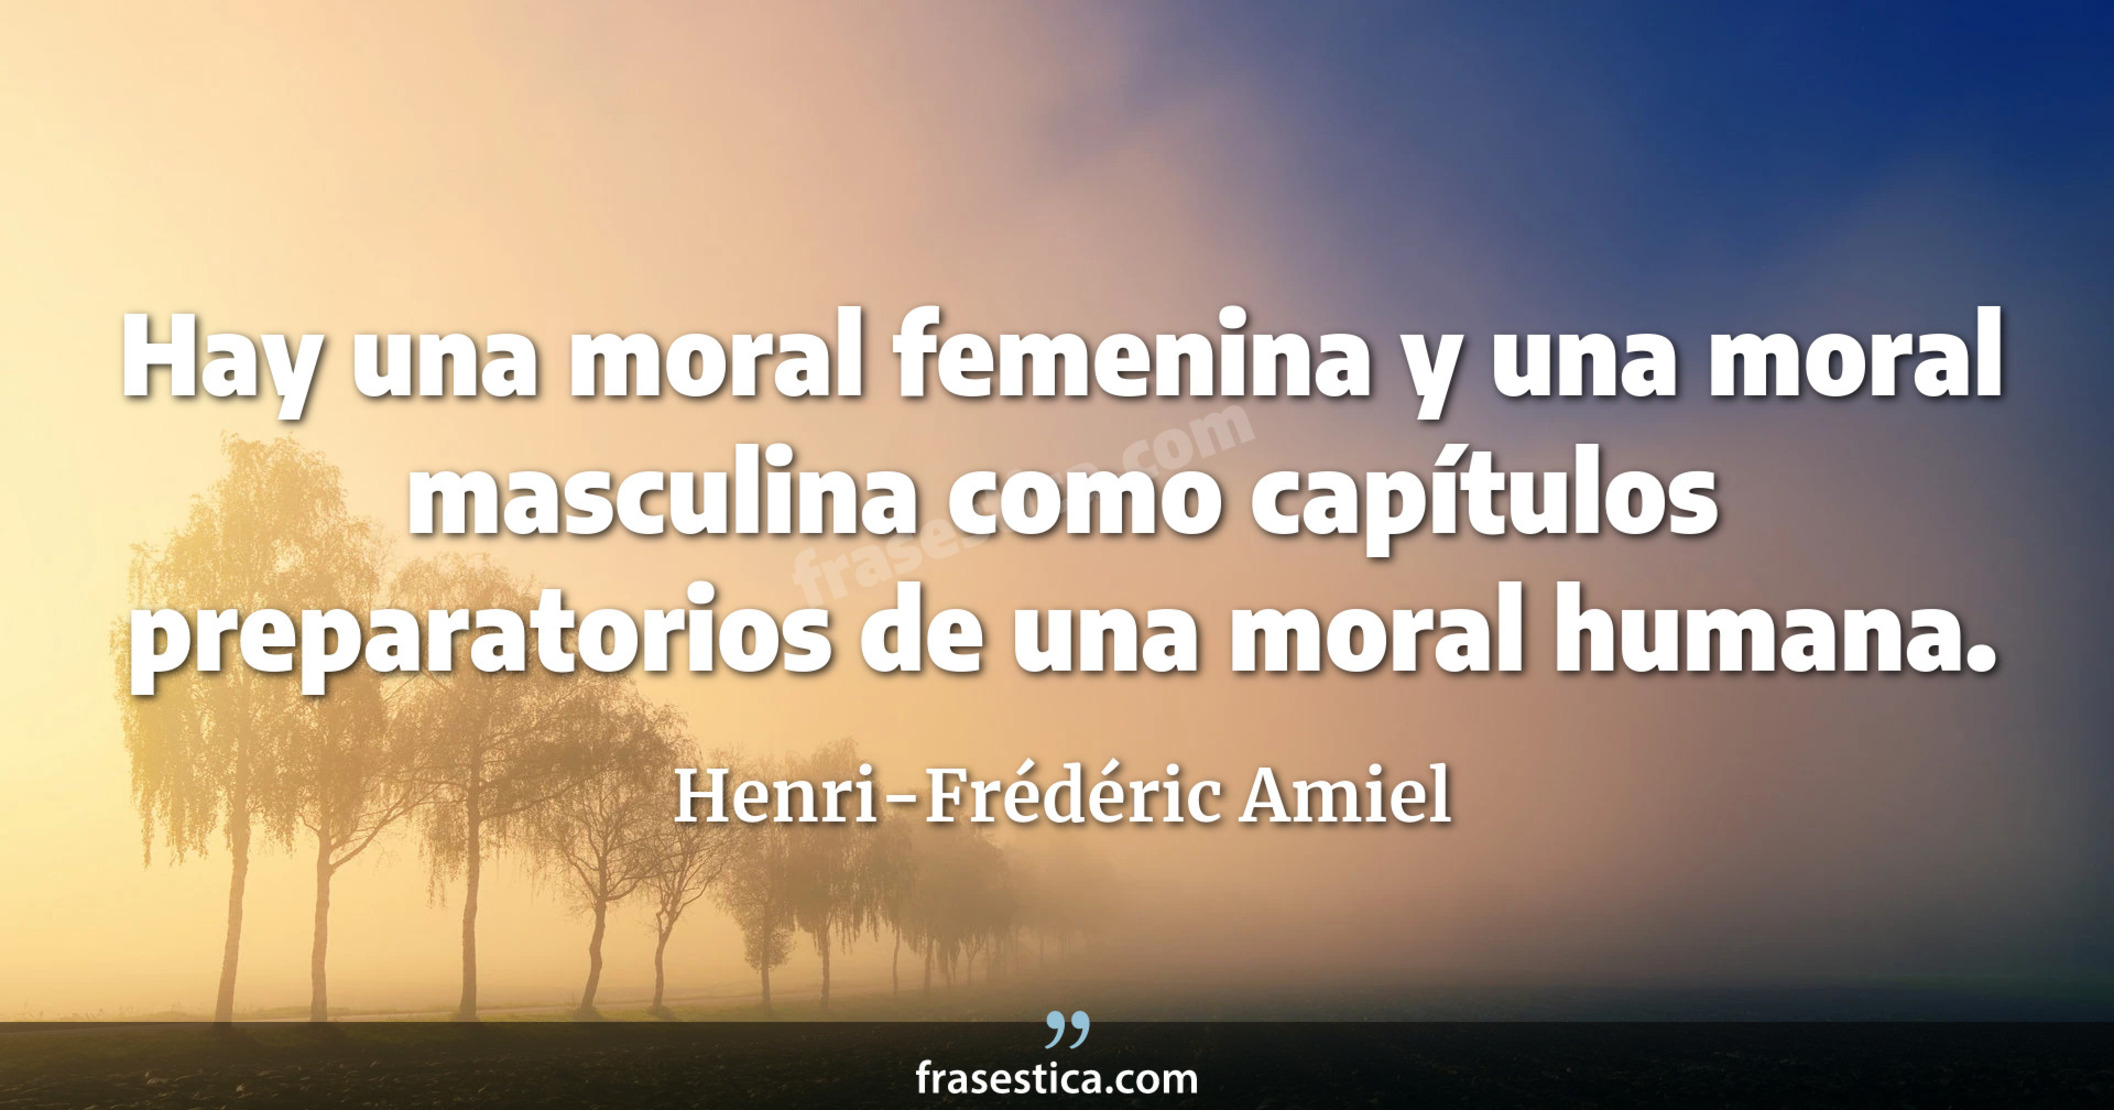 Hay una moral femenina y una moral masculina como capítulos preparatorios de una moral humana. - Henri-Frédéric Amiel